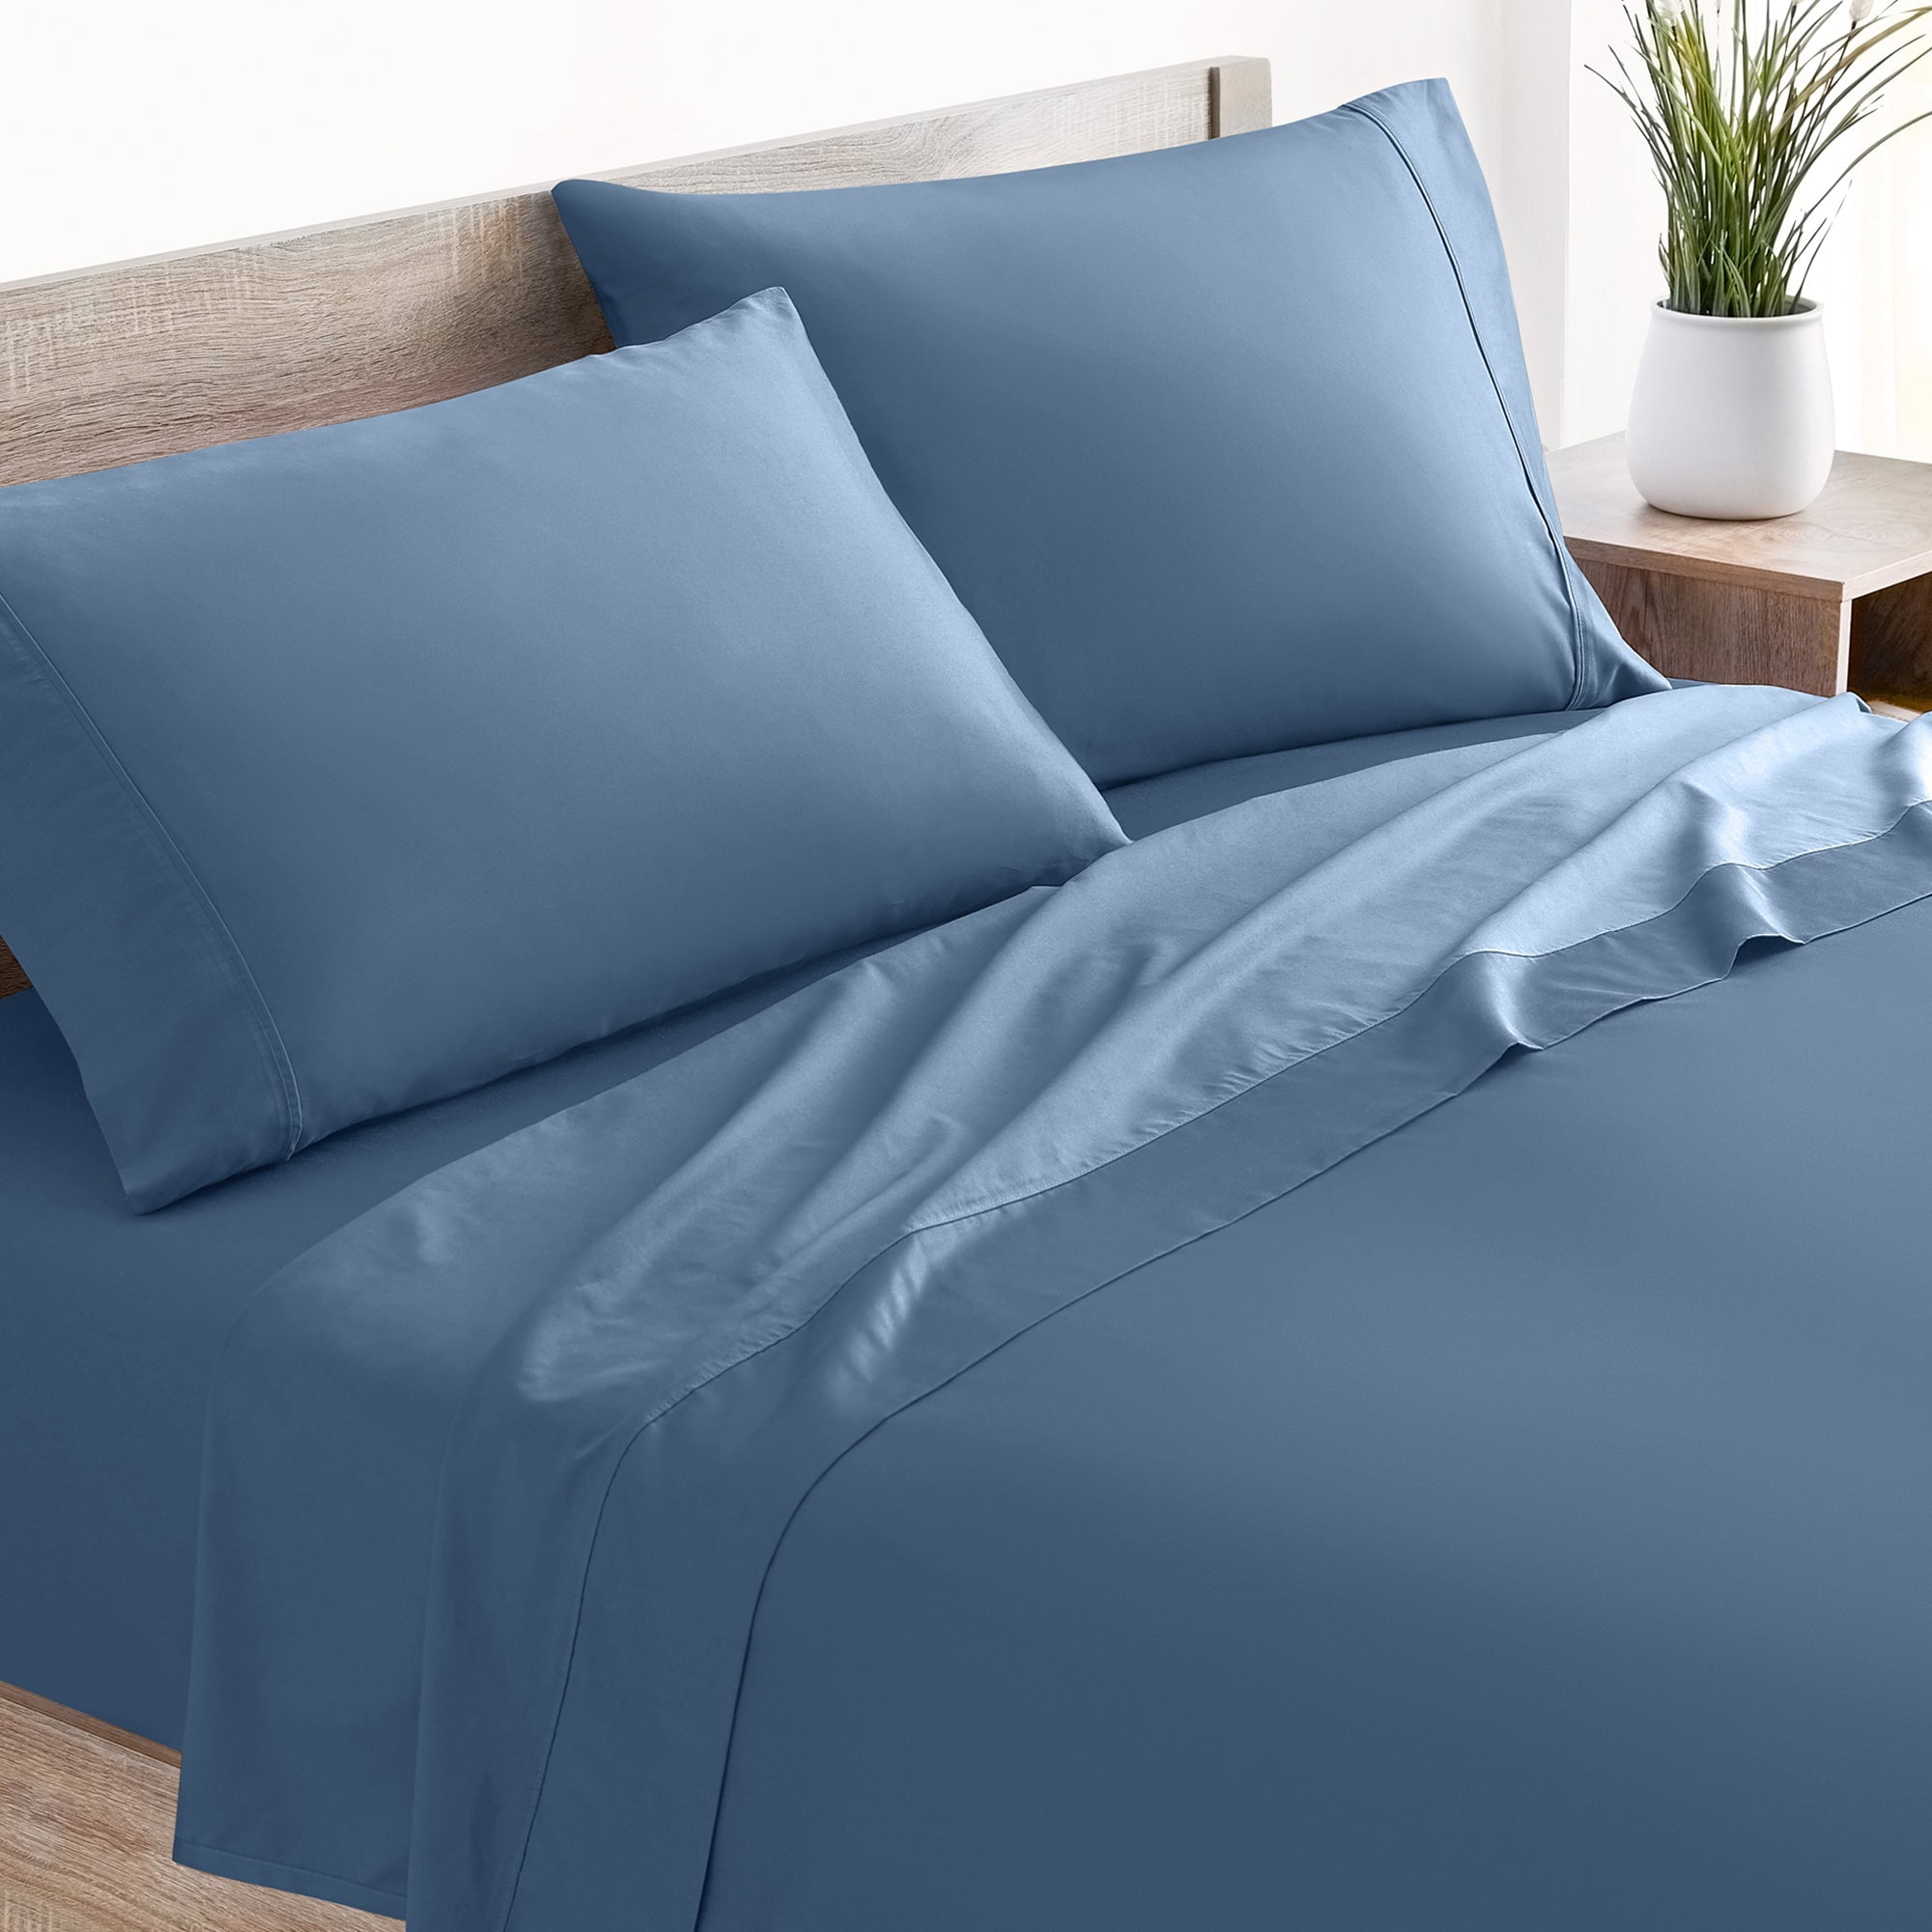 Mellanni Cotton Flannel 4 Piece Sheet Set, Lightweight Deep Pocket Bed Sheets, Queen, Blue